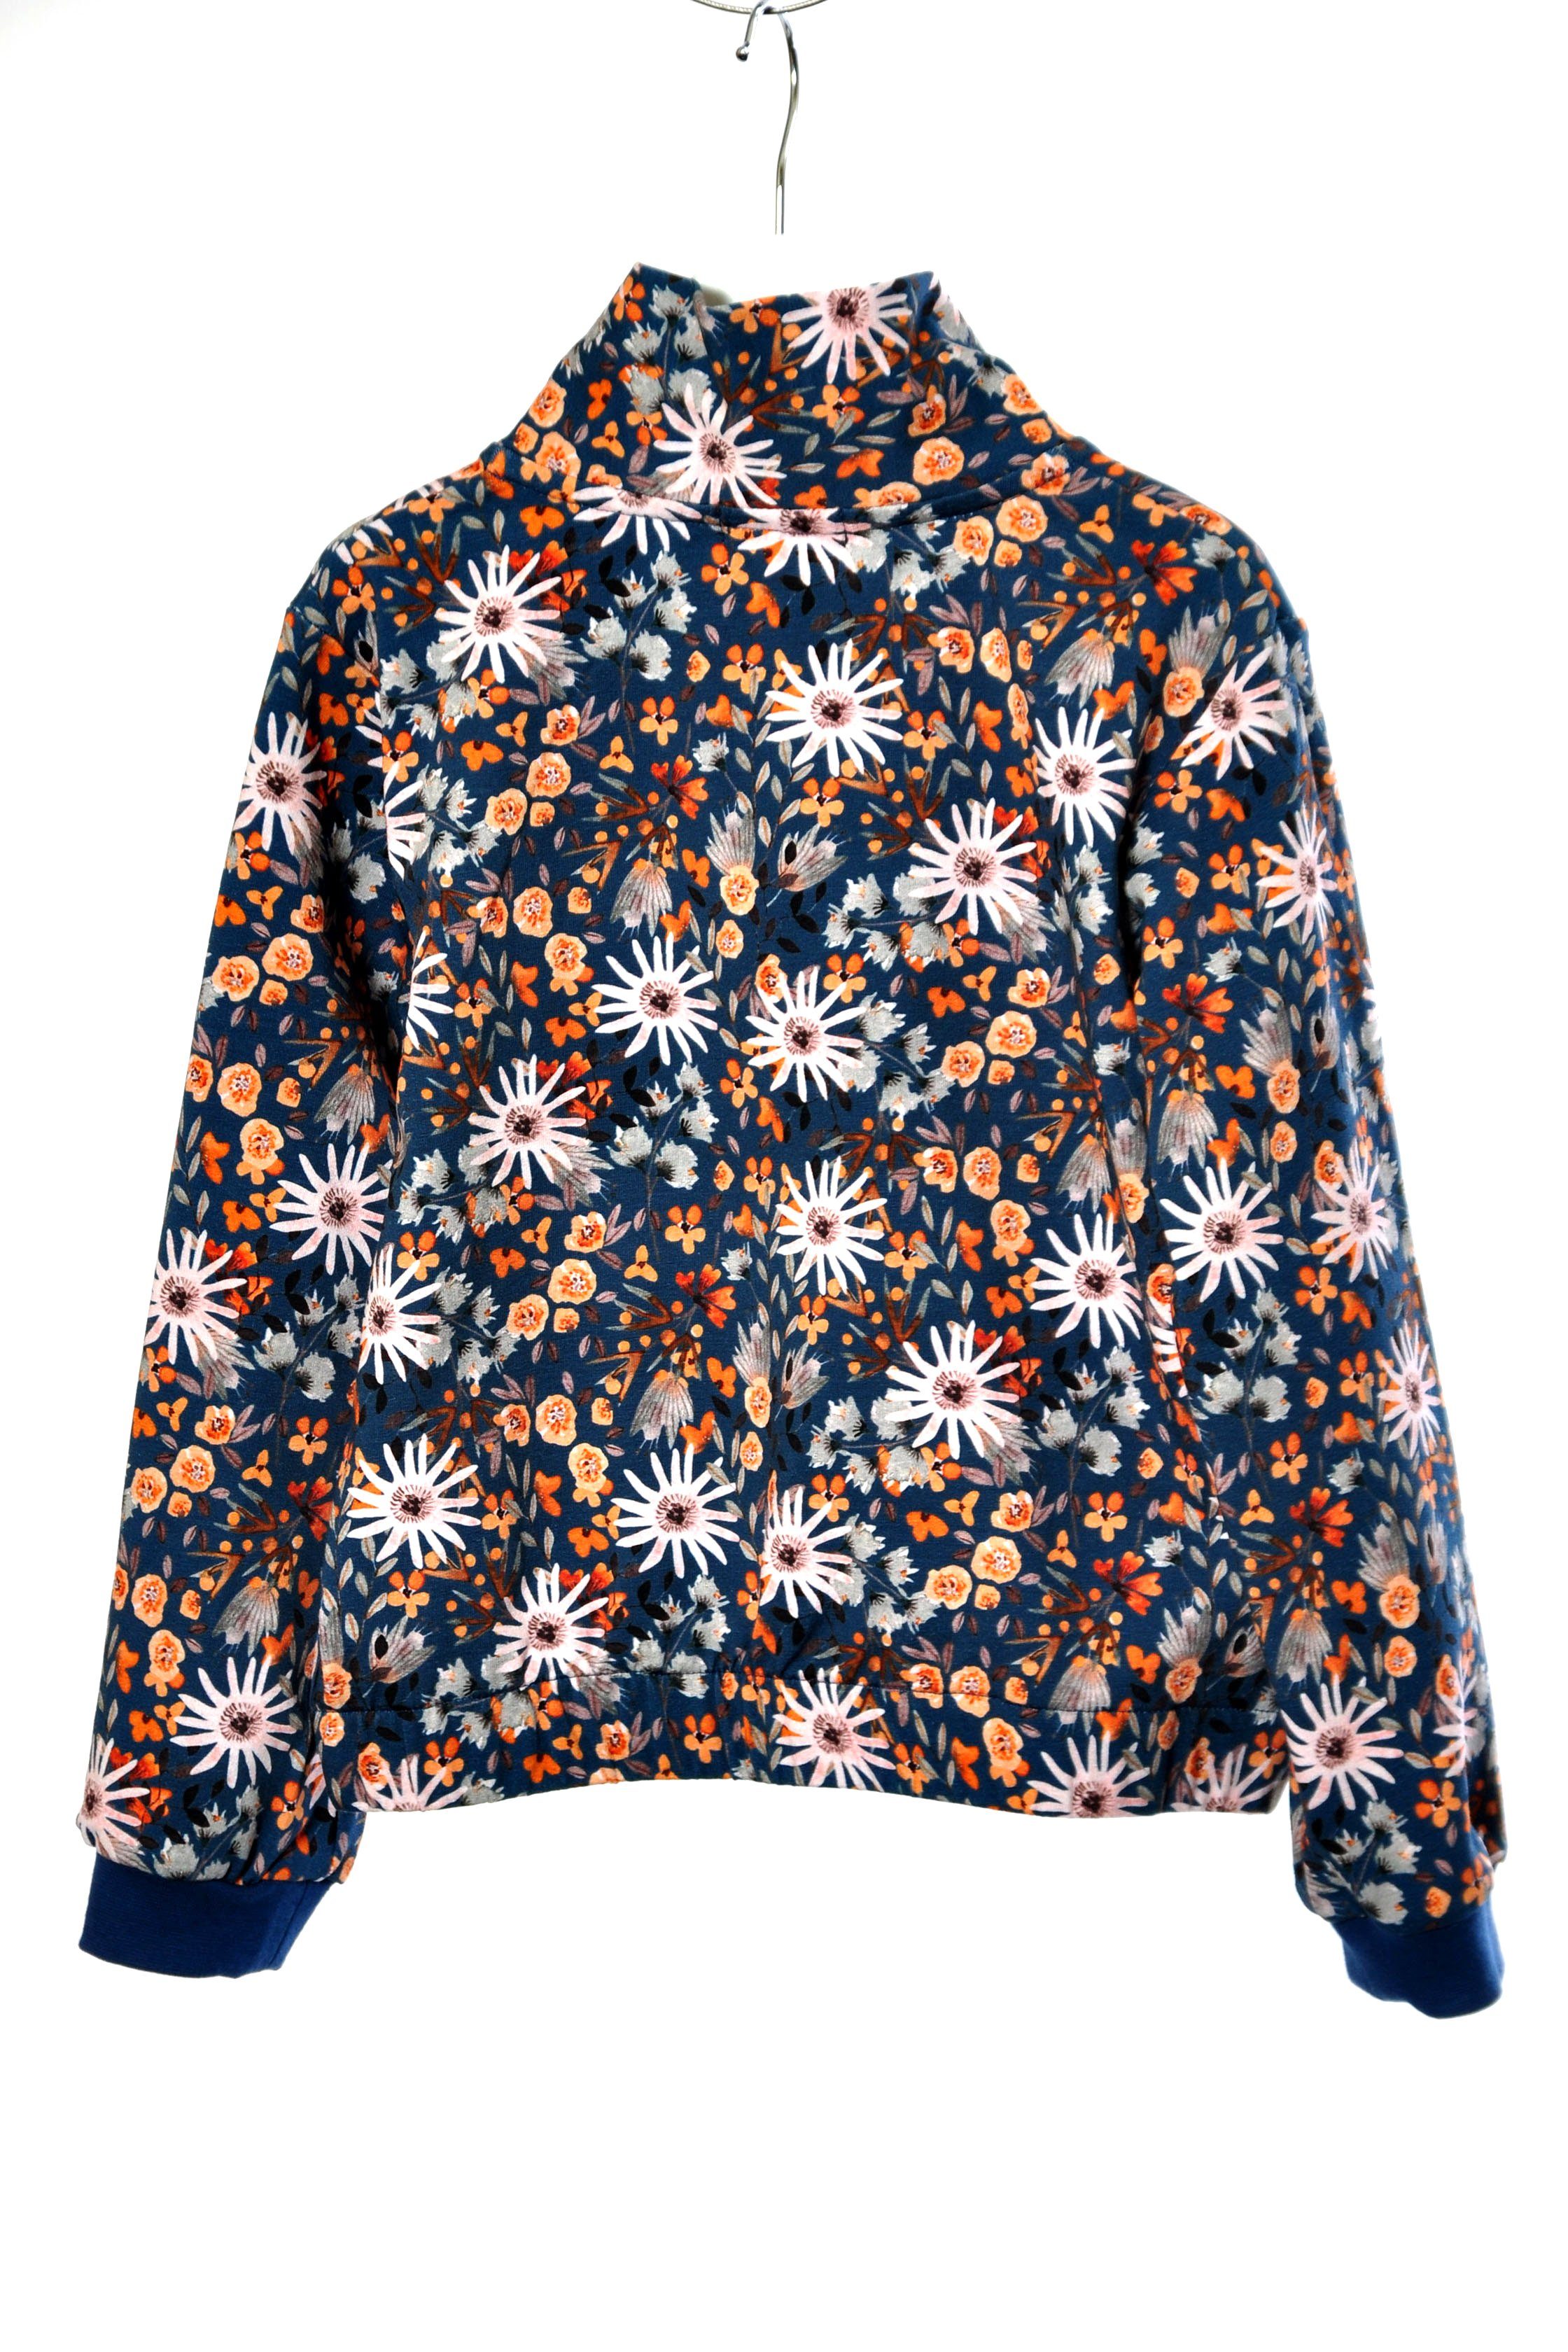 coolismo Sweatshirt Sweater blau mit für Motivdruck europäische Blumen Baumwolle, Mädchen Produktion